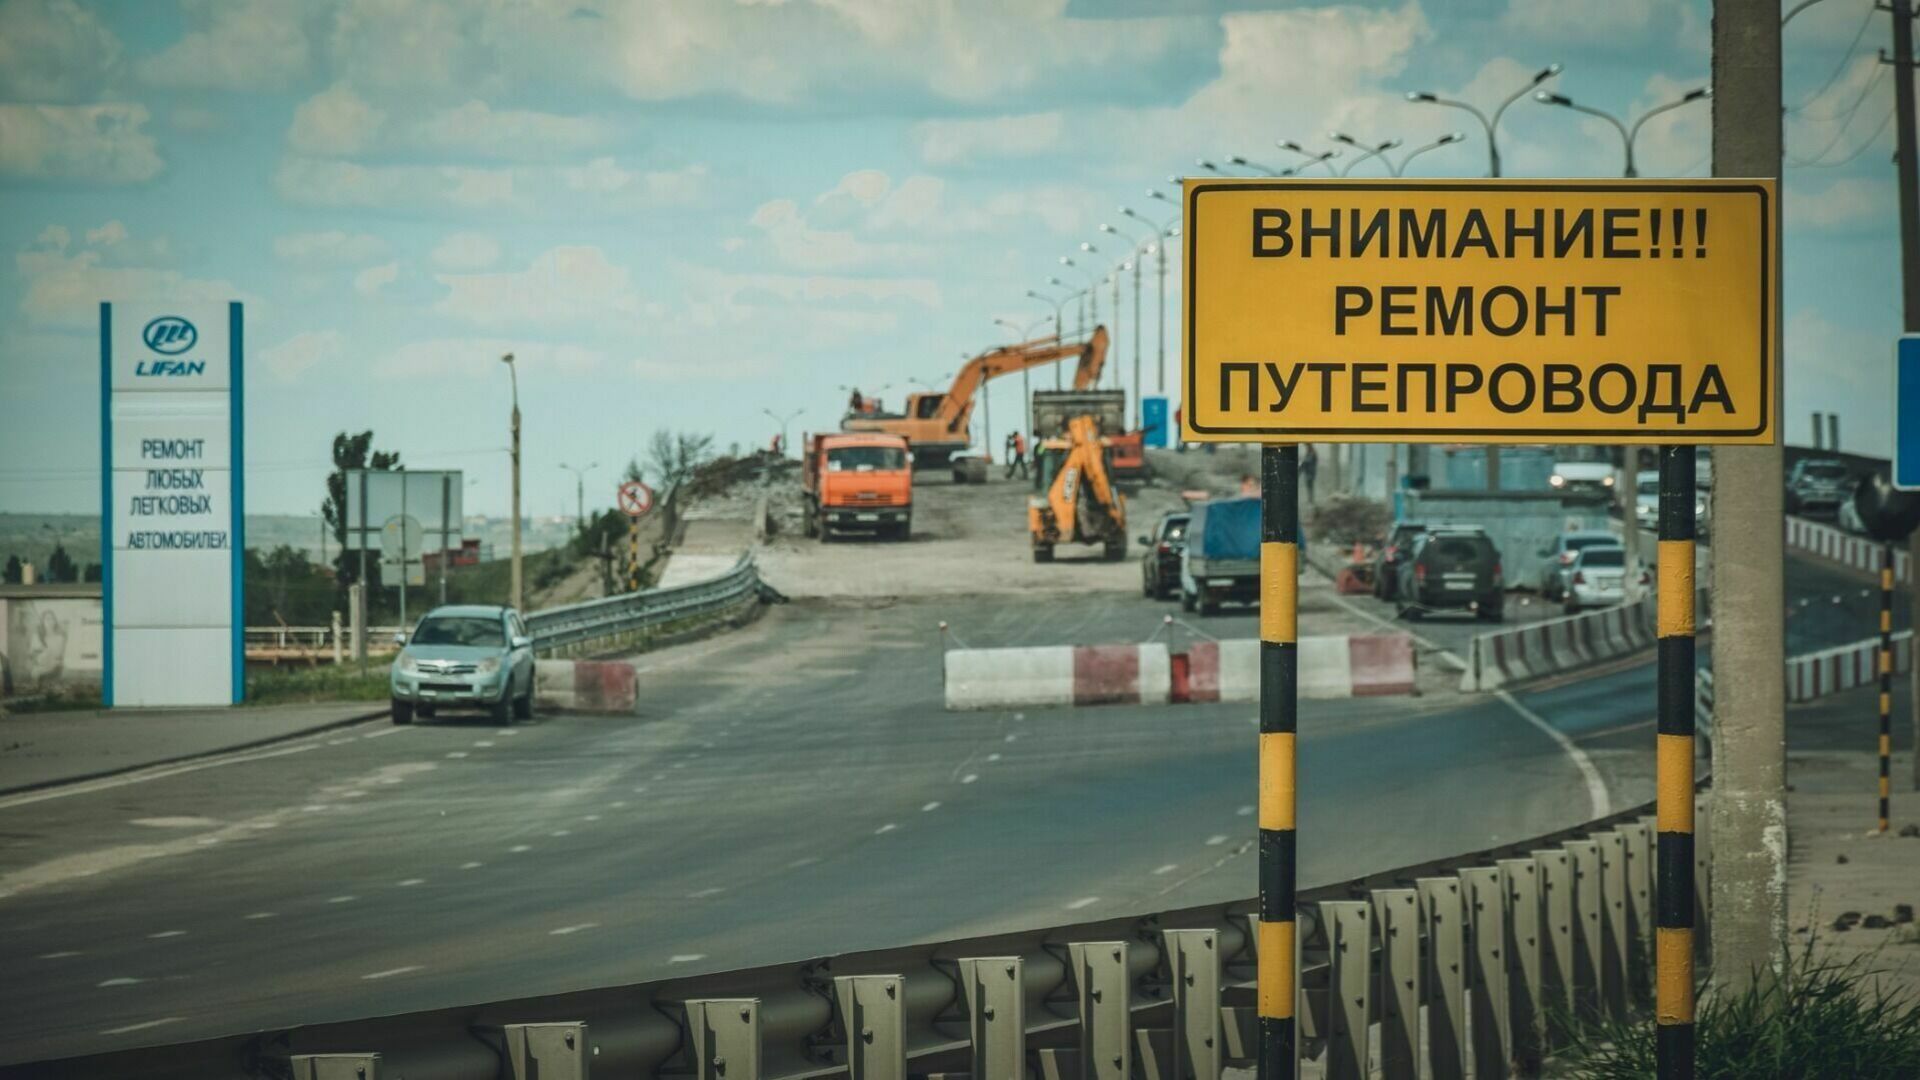 Сарептский путепровод в Волгограде меняет схему проезда с 23 февраля